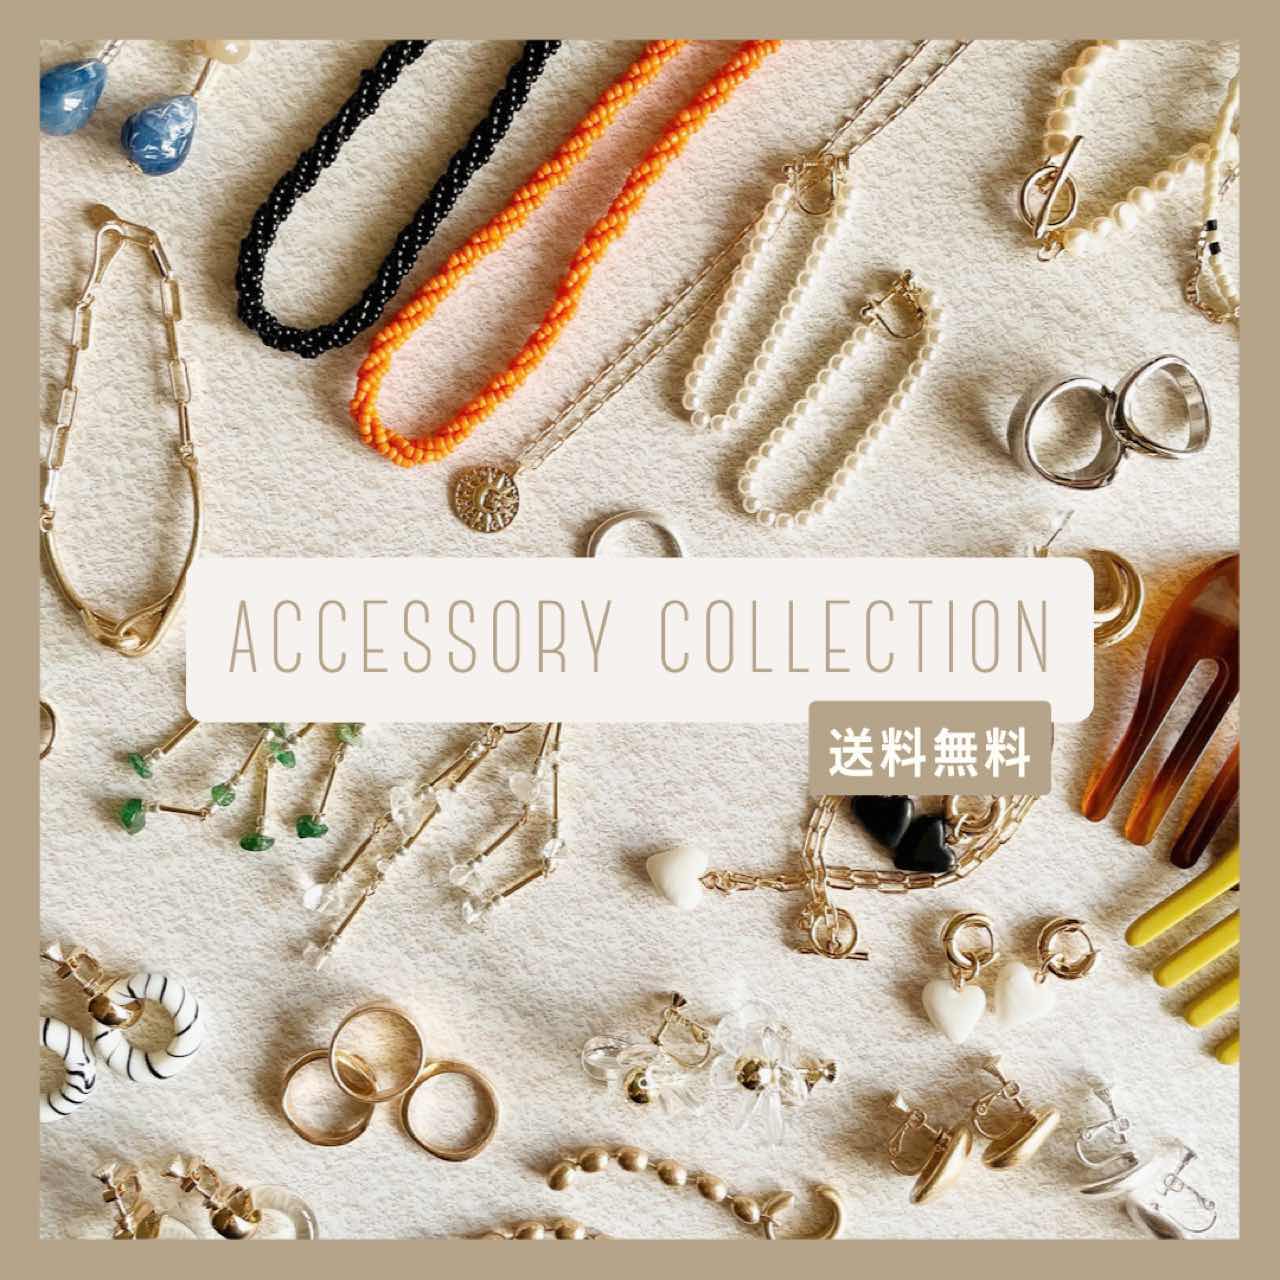 【 送料無料 】NEW accessory collection